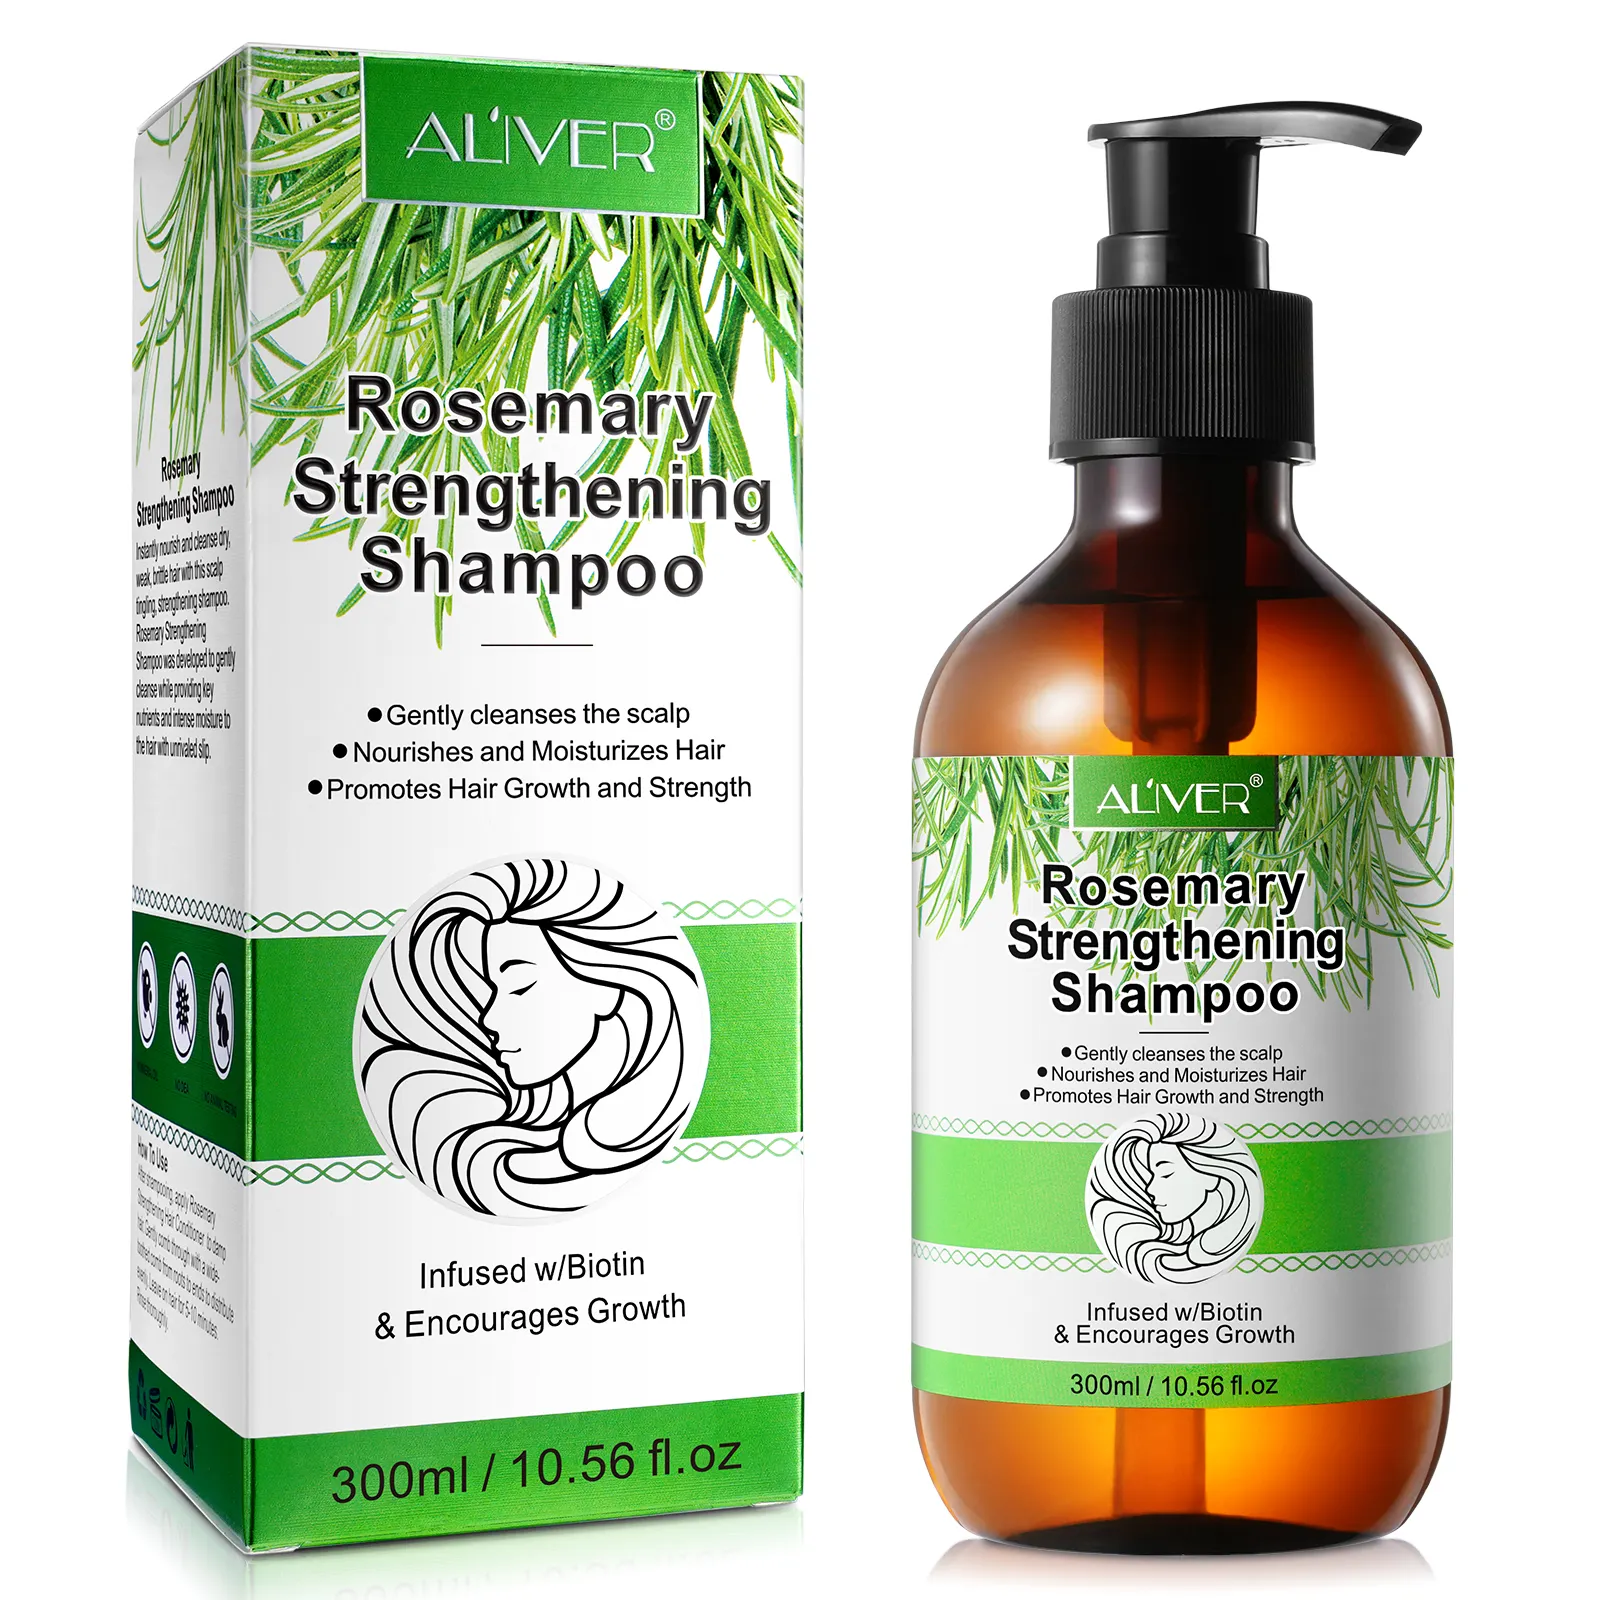 ALIVER unisex temizle özel toptan özel etiket organik anti saç dökülmesi saç ürünleri biberiye saç büyüme şampuan